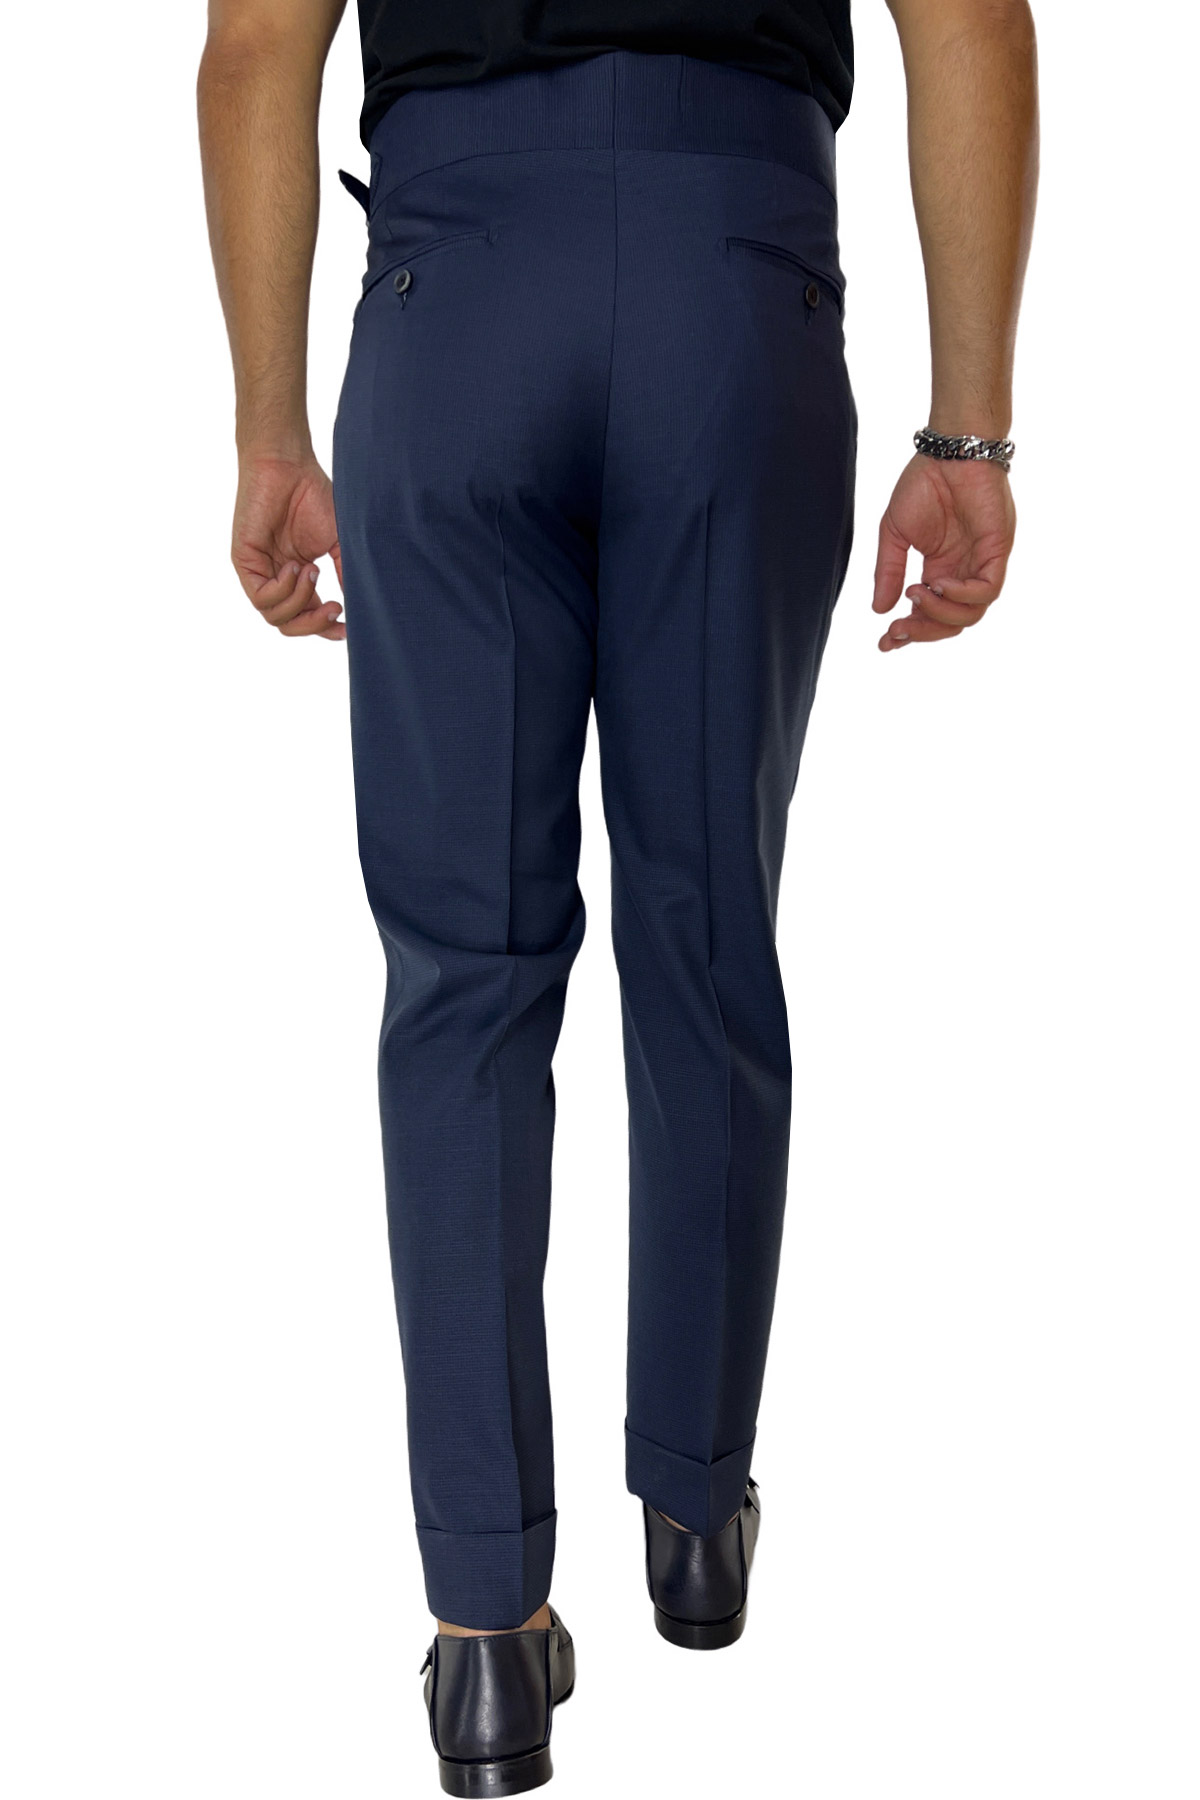 Pantalone uomo blu pied de poule vita alta modello biforcato in fresco lana super 120's Holland & Sherry